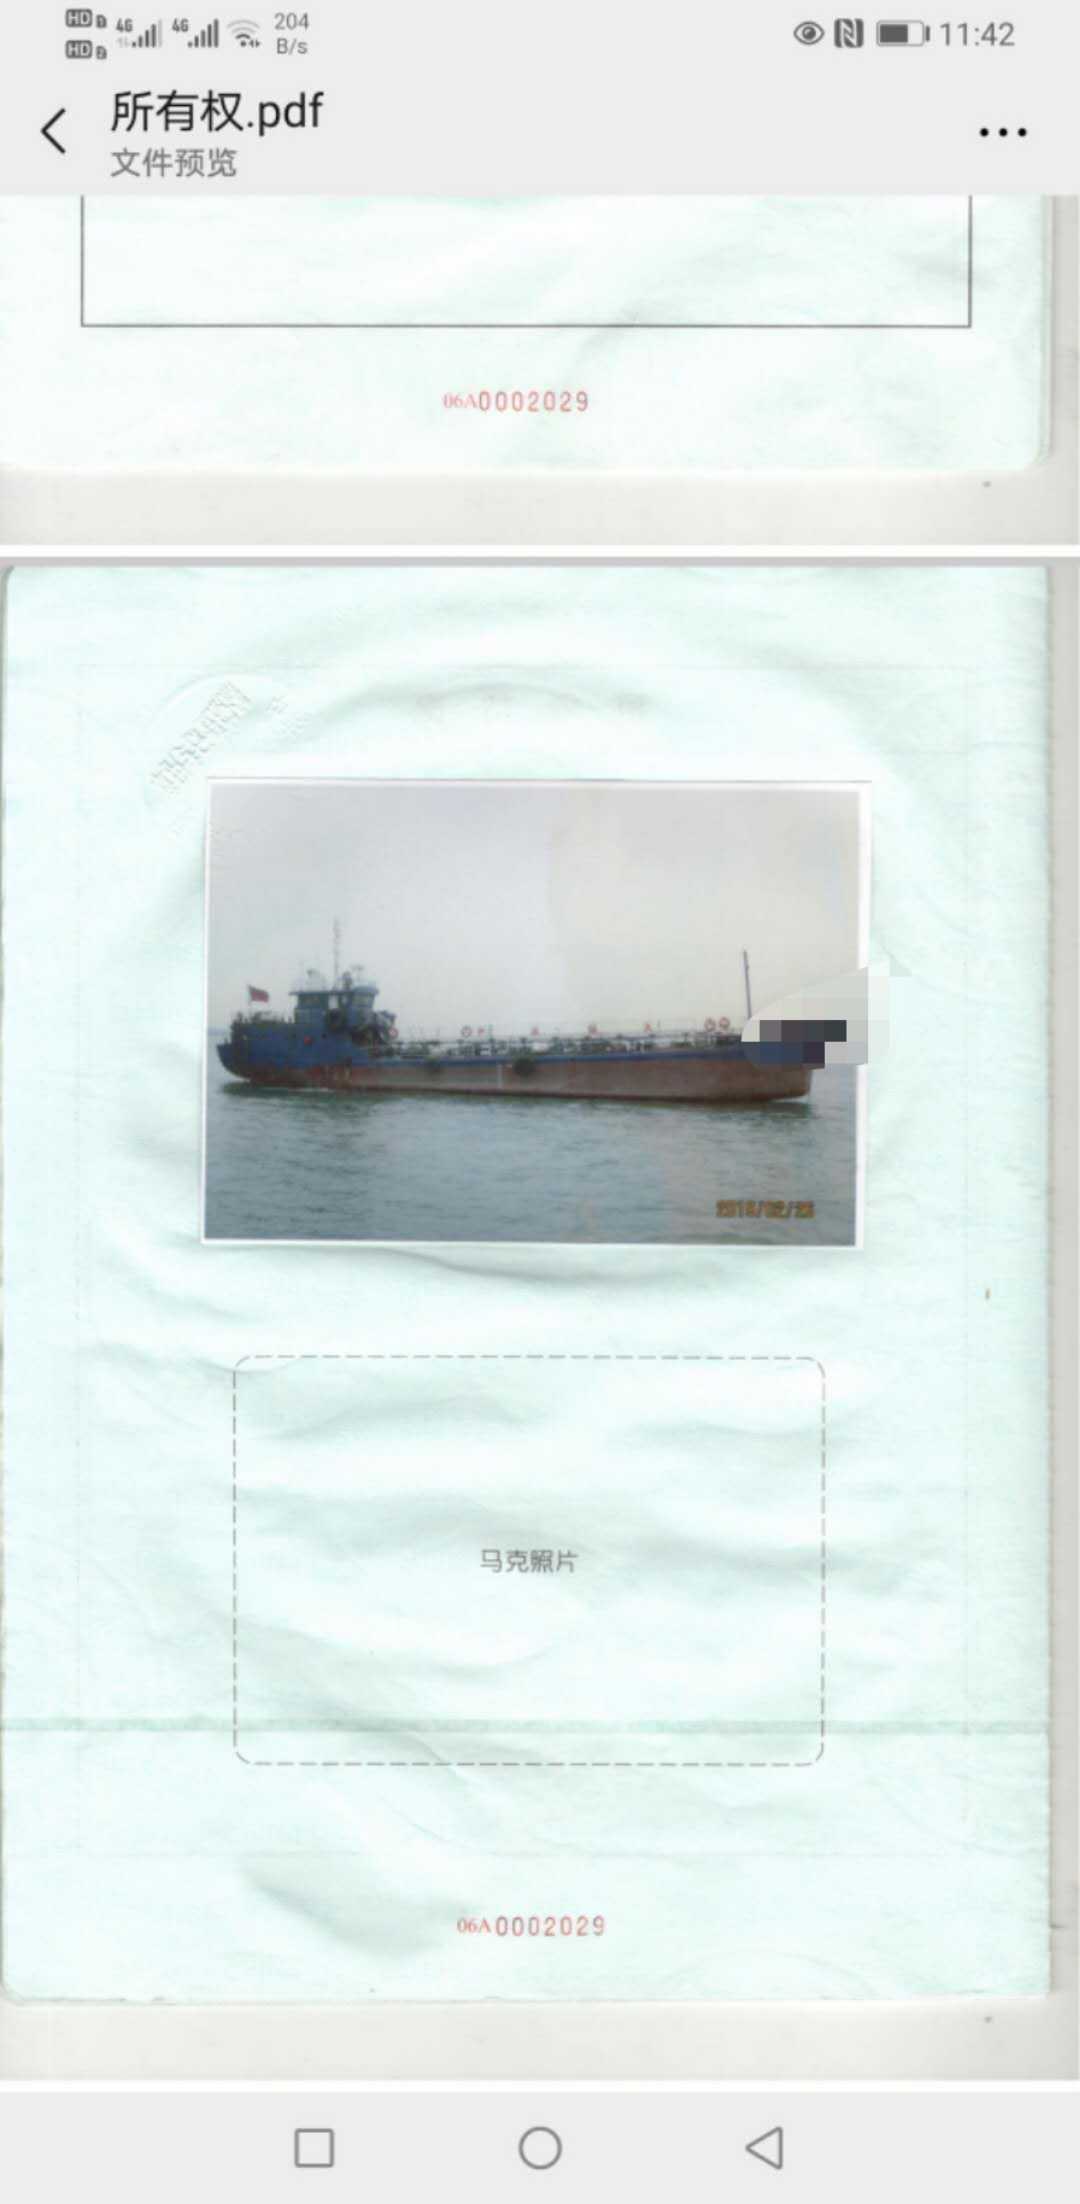 污油回收船